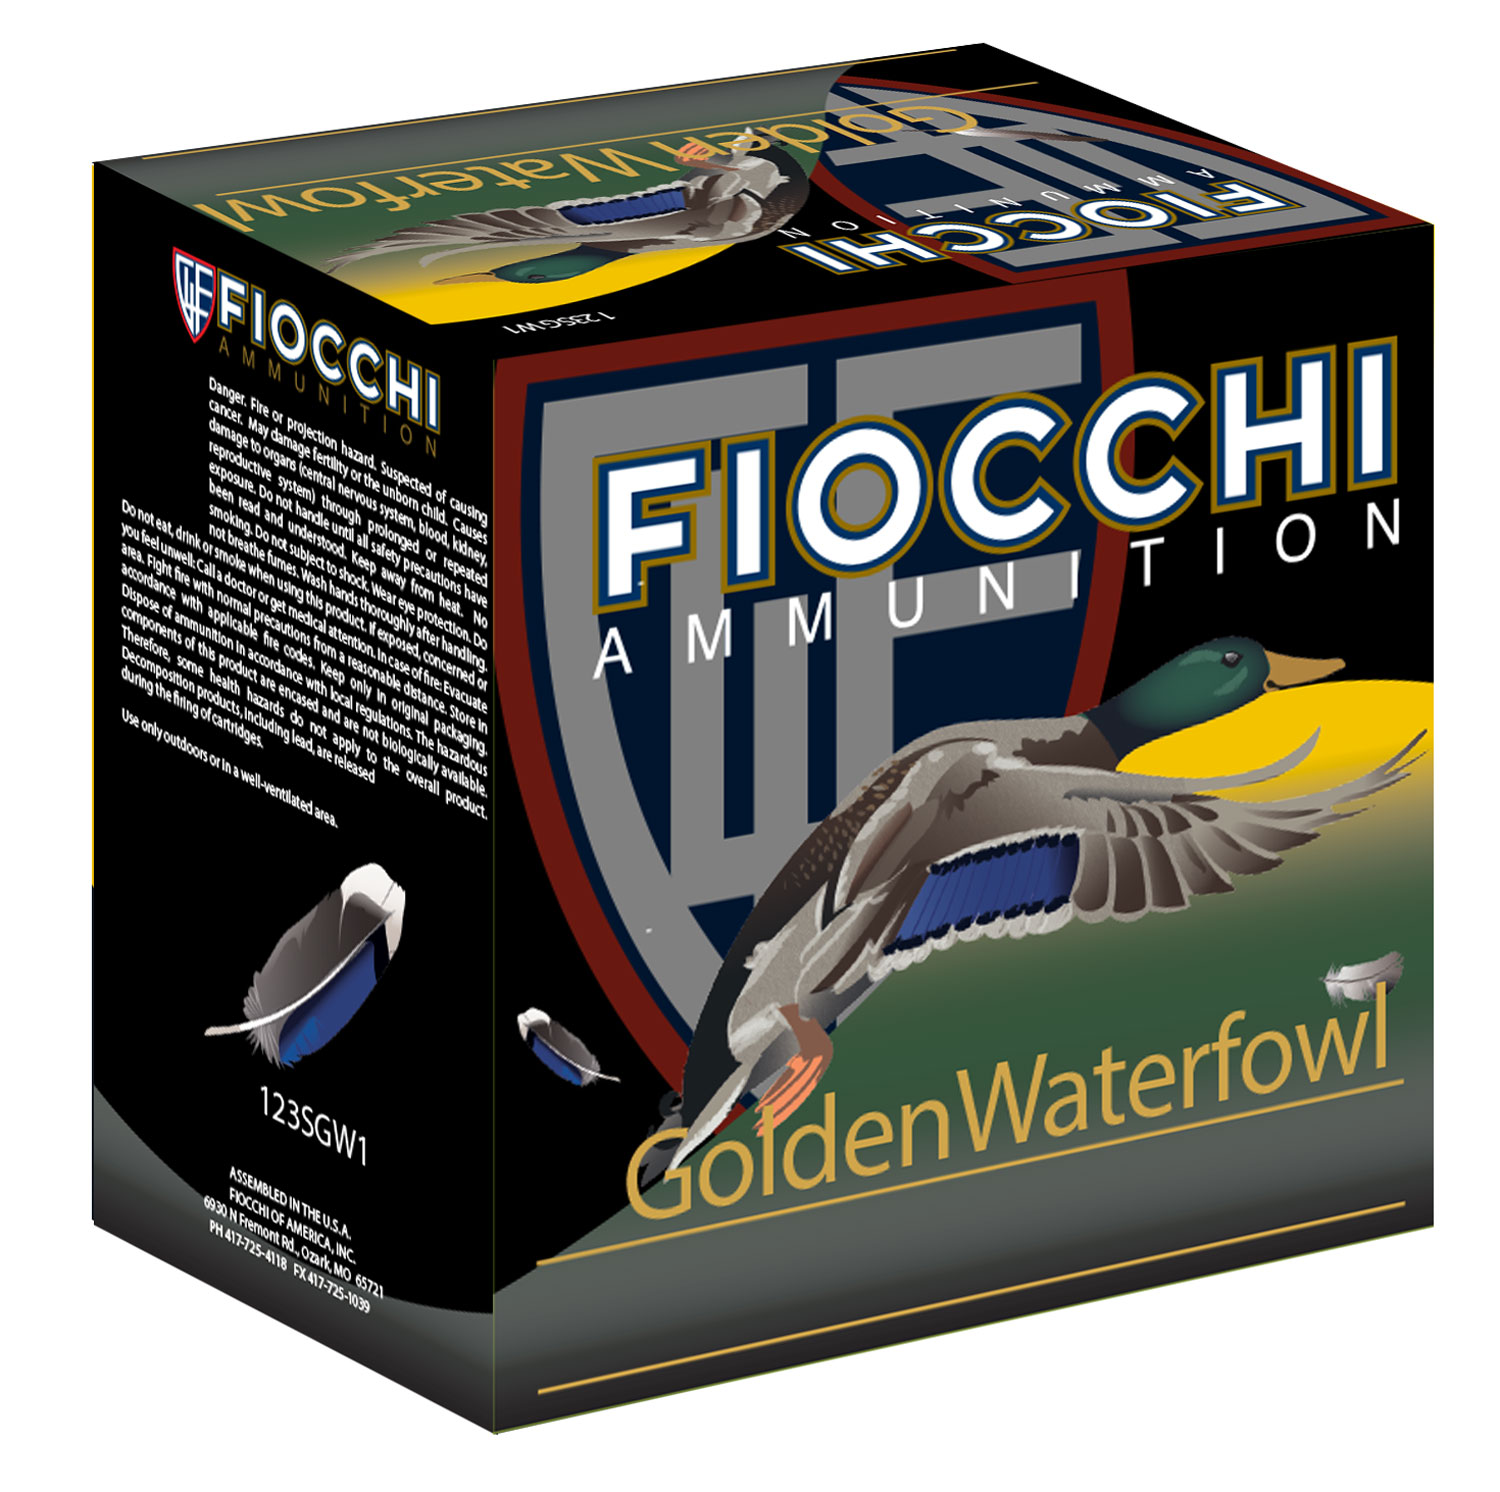 Fiocchi 123SGW1 Golden Waterfowl  12 Gauge 3